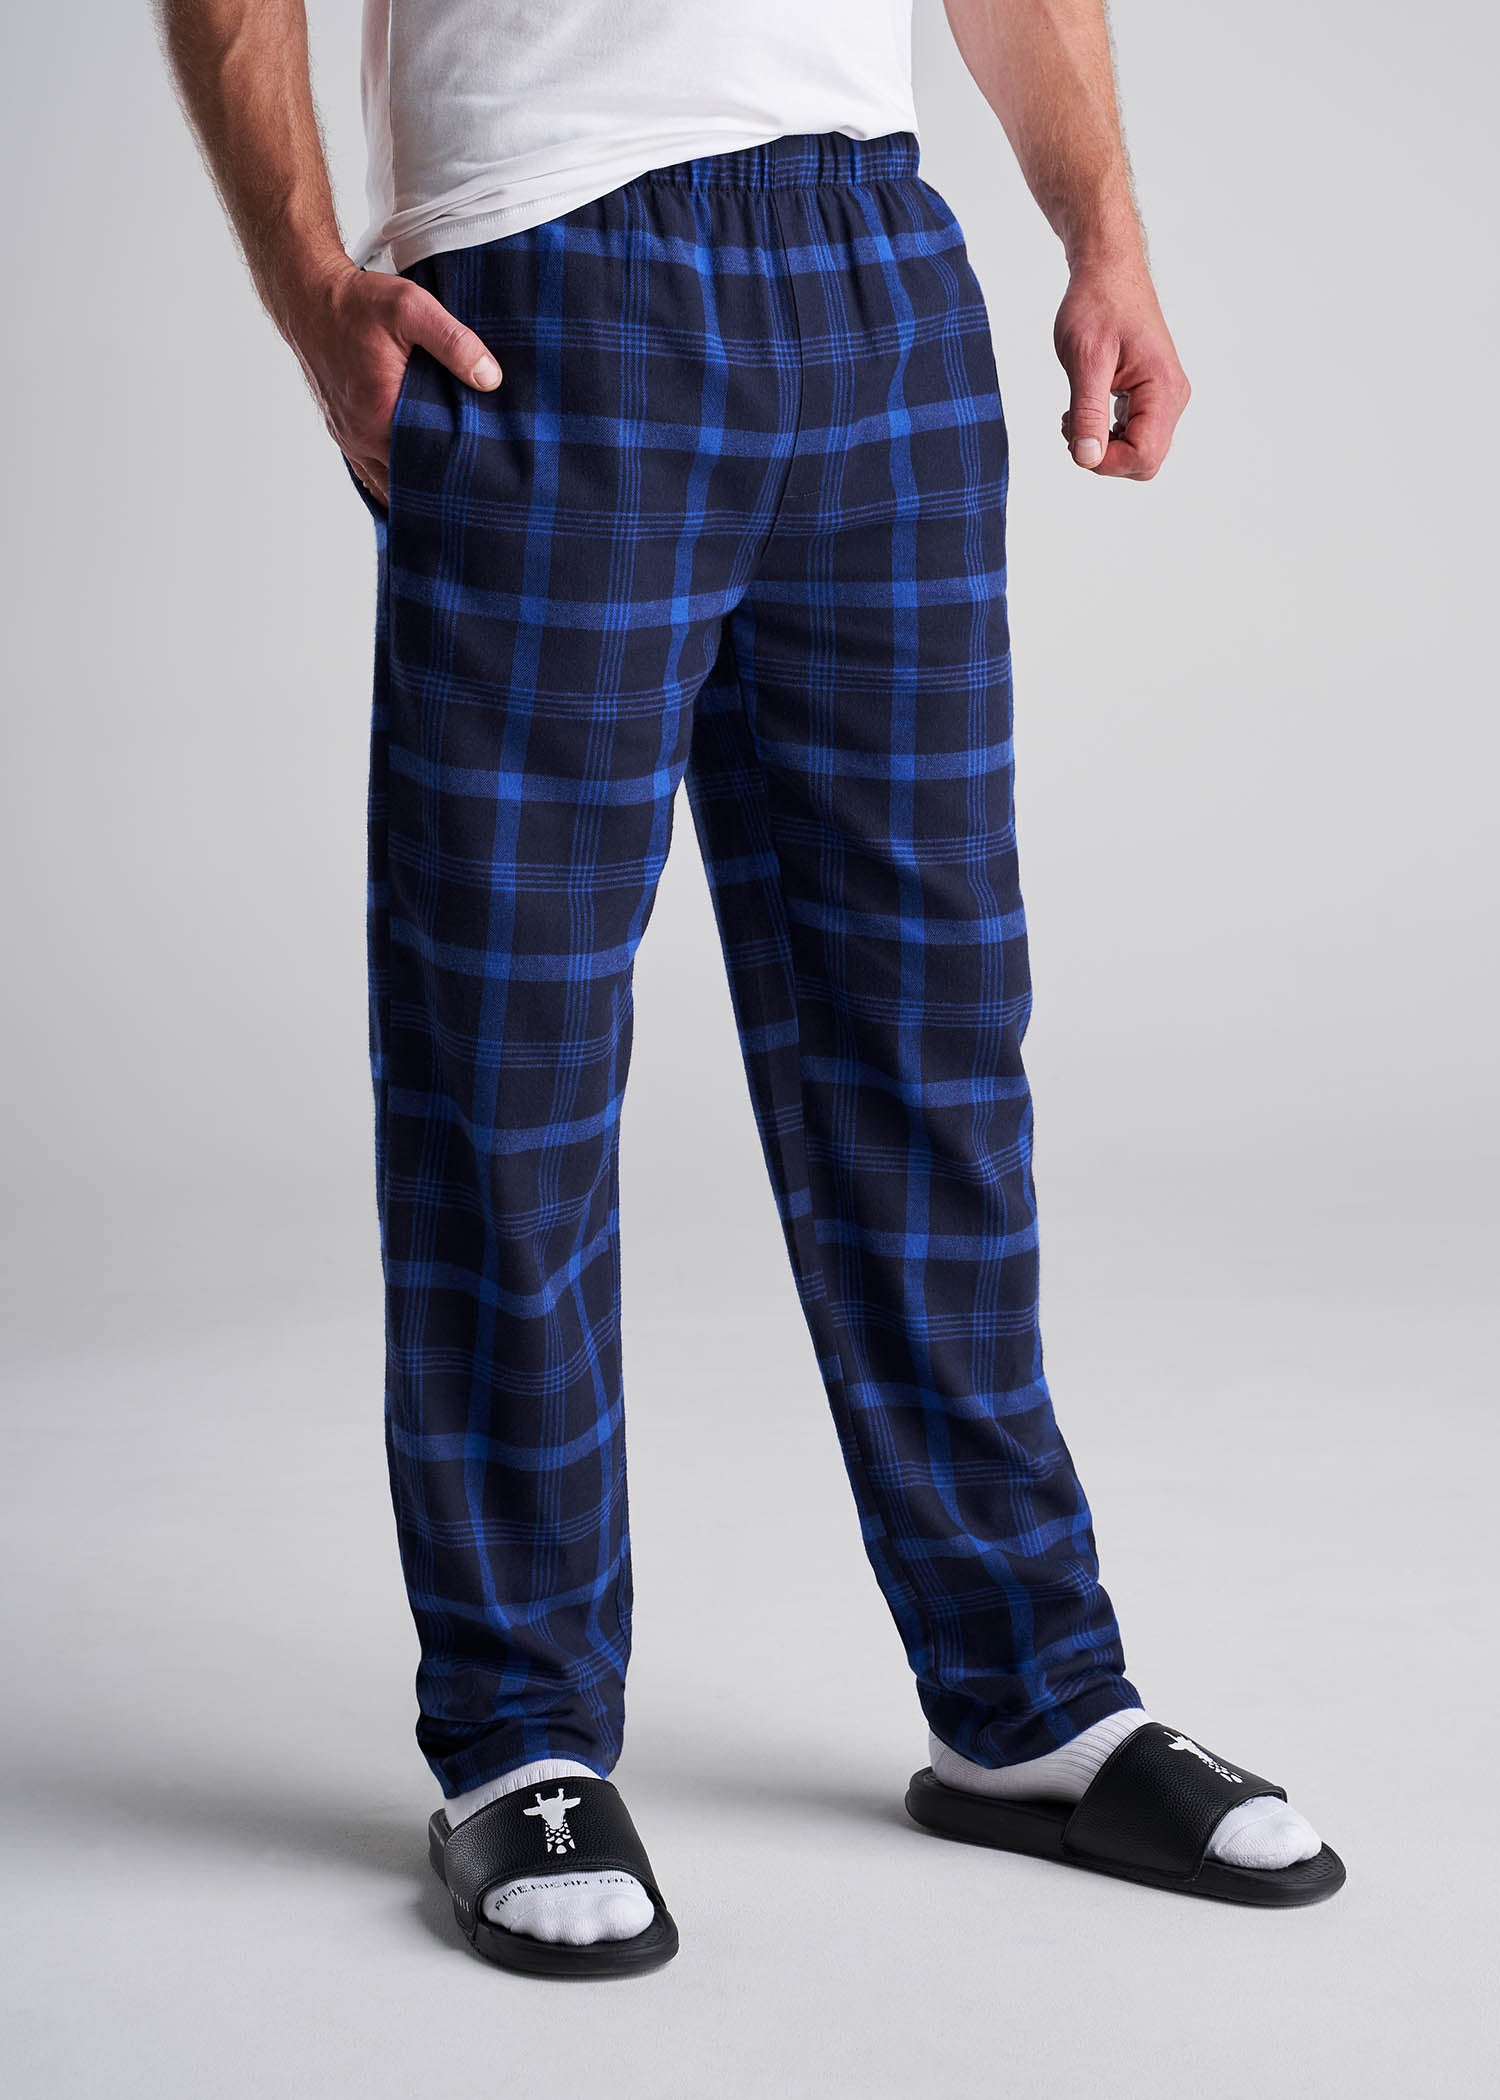 Tall Mens Pajama Pants